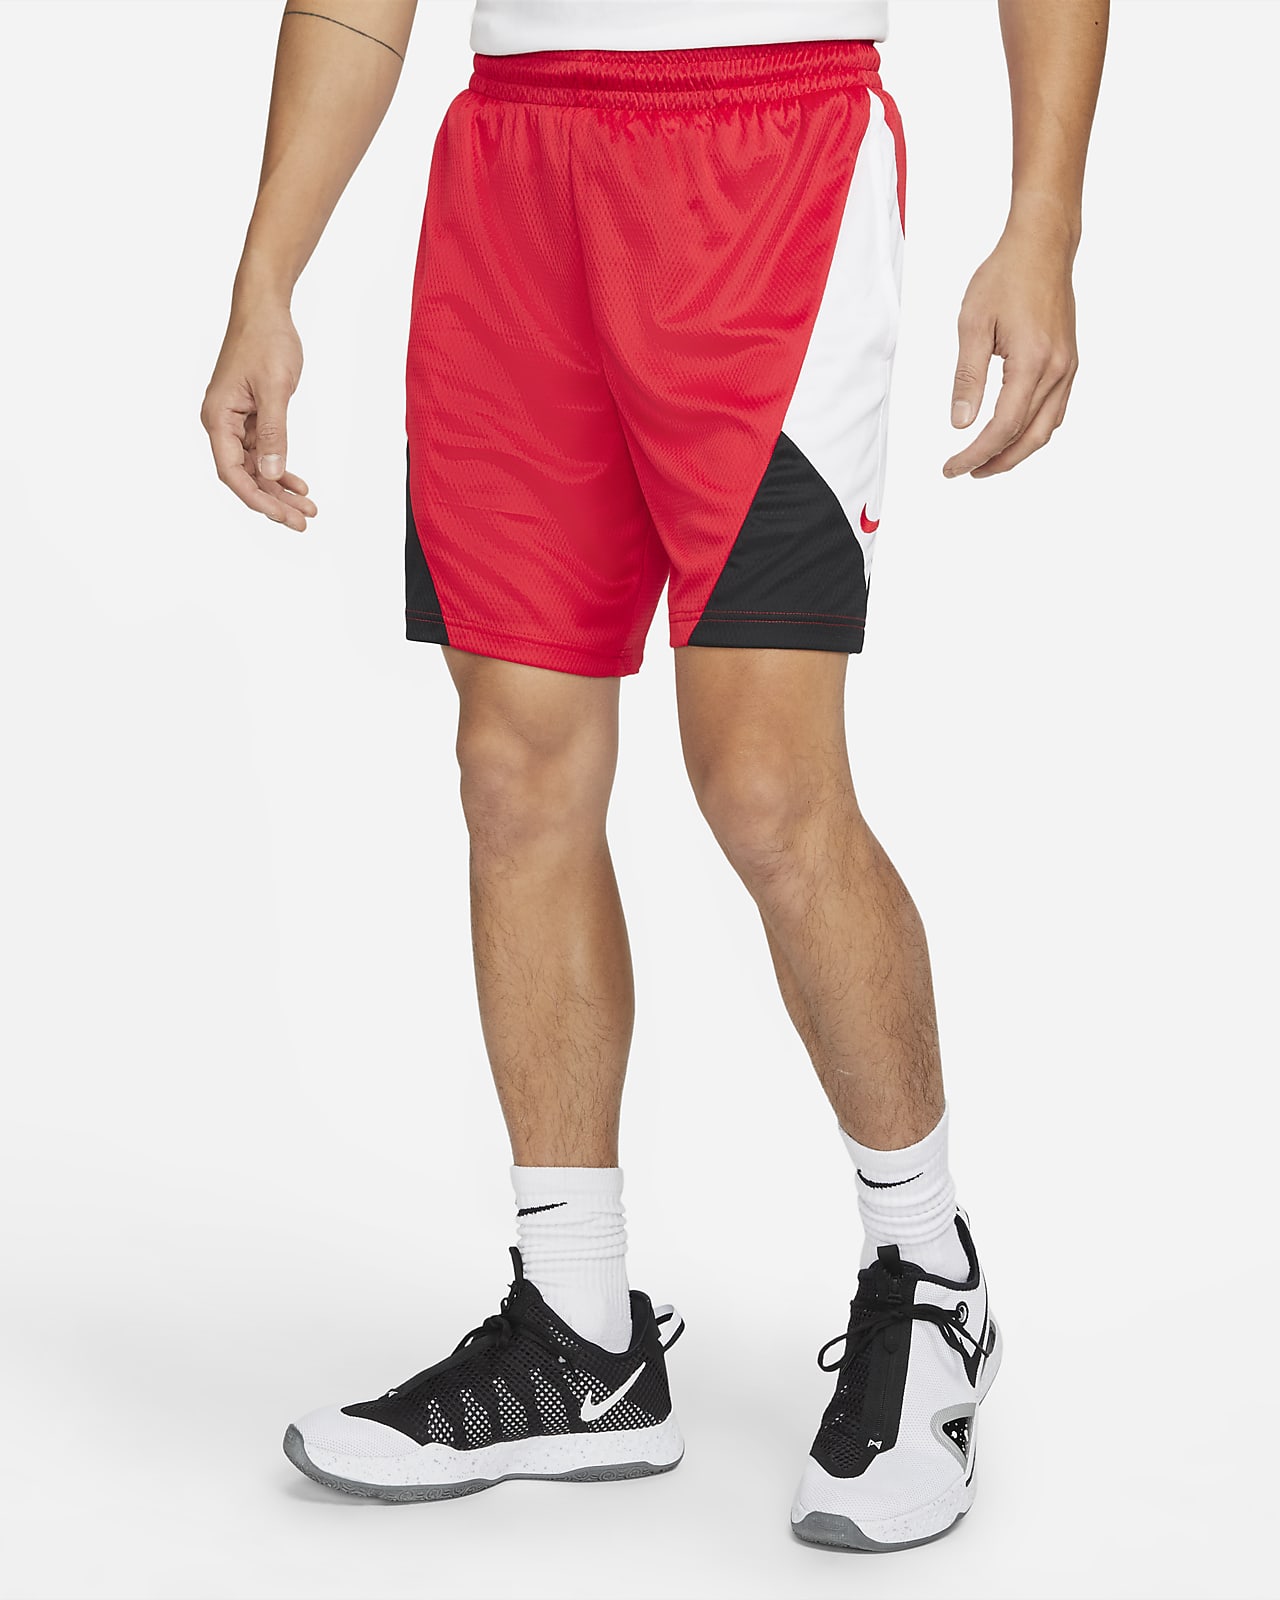 Nike Dri-FIT Rival Men's Basketball Shorts